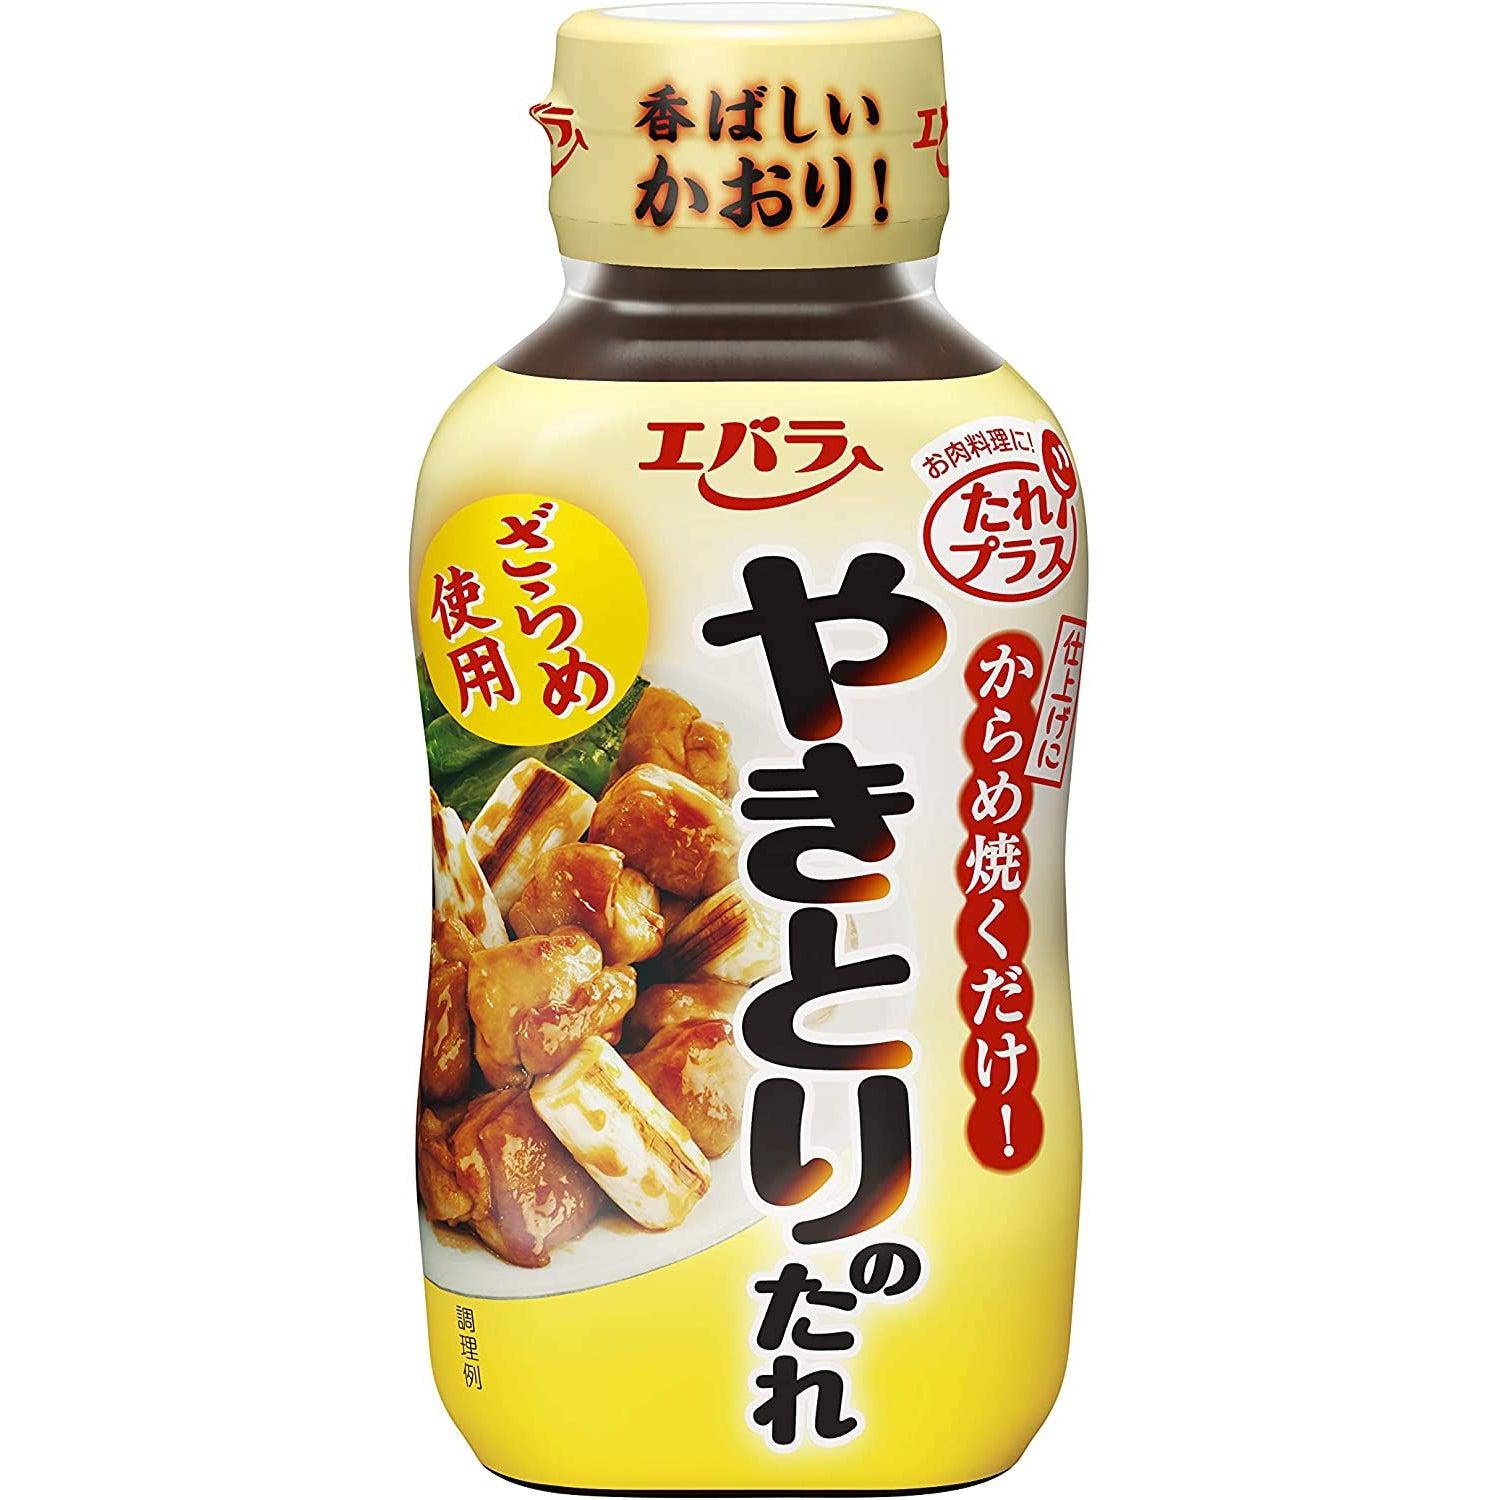 https://int.japanesetaste.com/cdn/shop/files/ebara-yakitori-no-tare-japanese-yakitori-sauce-240g-japanese-taste.jpg?v=1692242270&width=5760